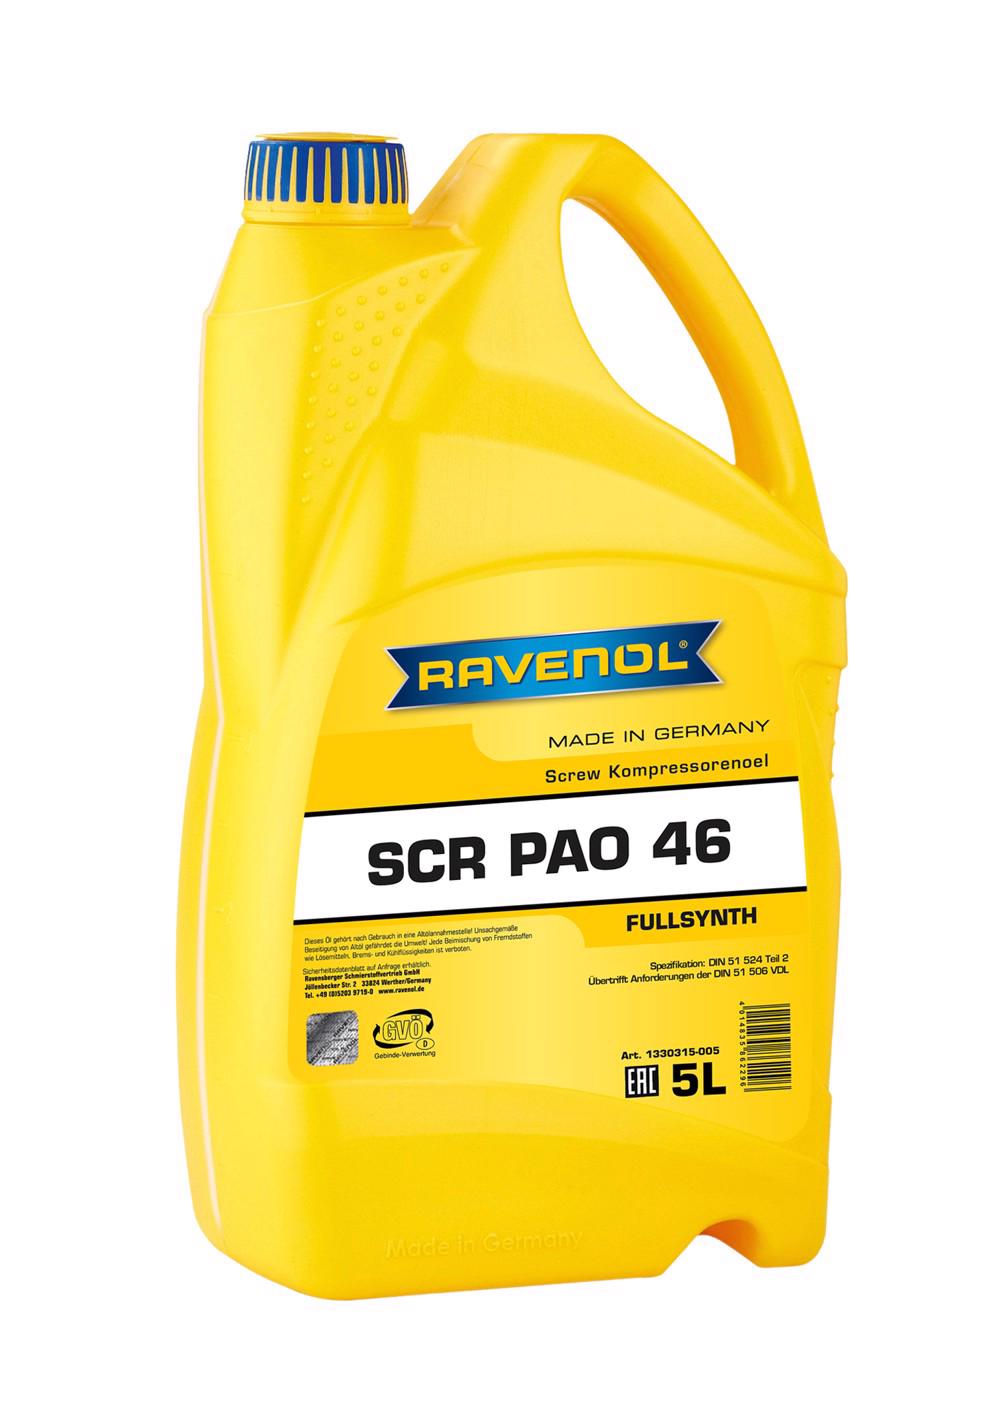 RAVENOL SCR PAO 46 Screw Kompressorenoel  5 L